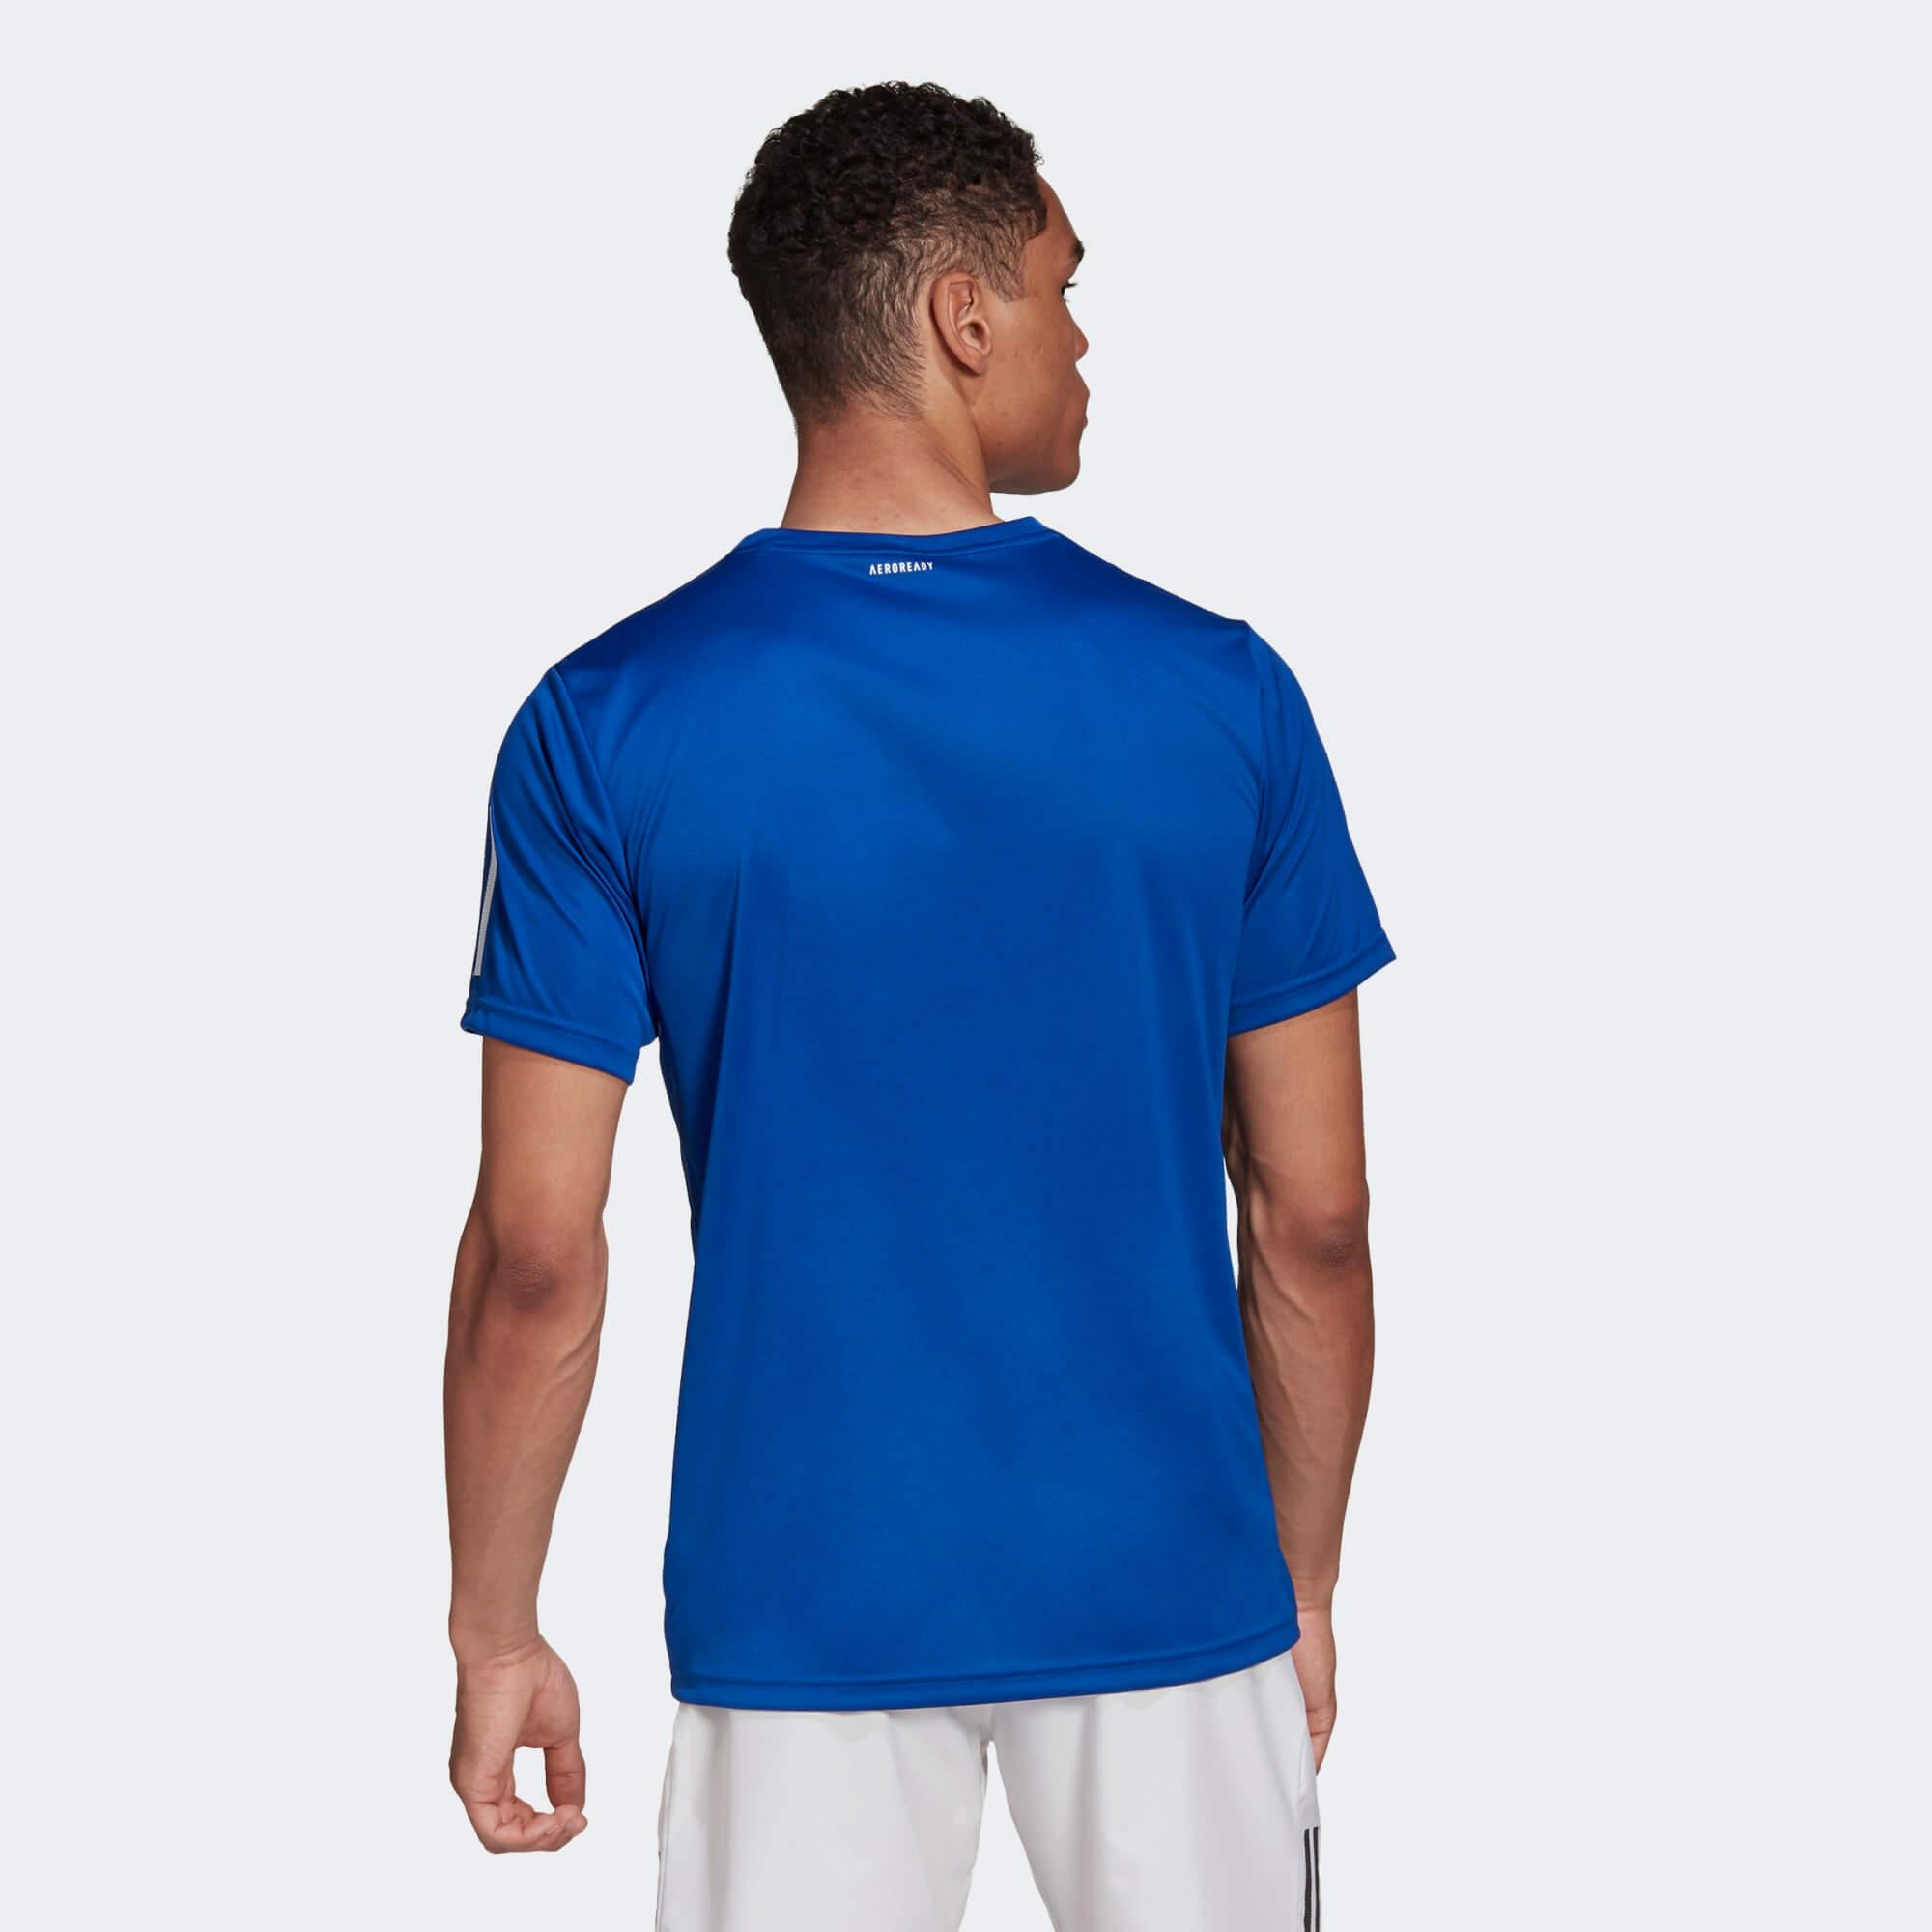 Adidas Mens 3-Stripes Club AeroReady T-Shirt - Royal Blue - Tennisnuts.com